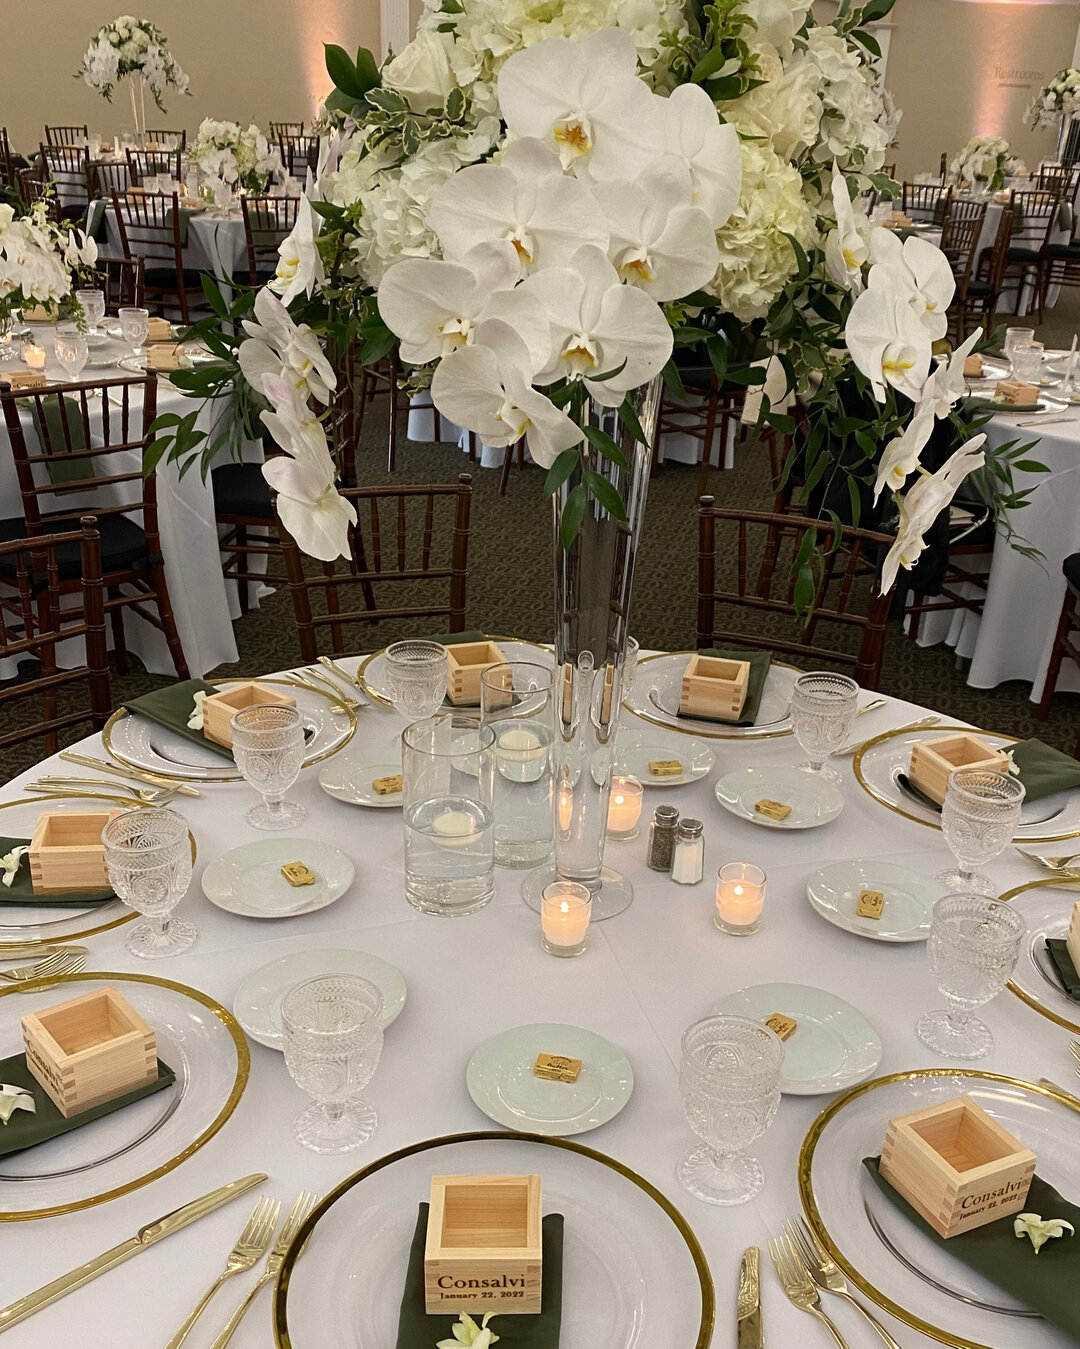 圣克莱门特赌场的婚礼布置得很漂亮!!! 💍🎰

我们喜欢简洁的白色花朵和点着蜡烛的桌子... 🤩

# 皇冠365官方APPcatering #皇冠365官方APP #谢天谢地，索菲亚#lacatering #occatering #婚礼#